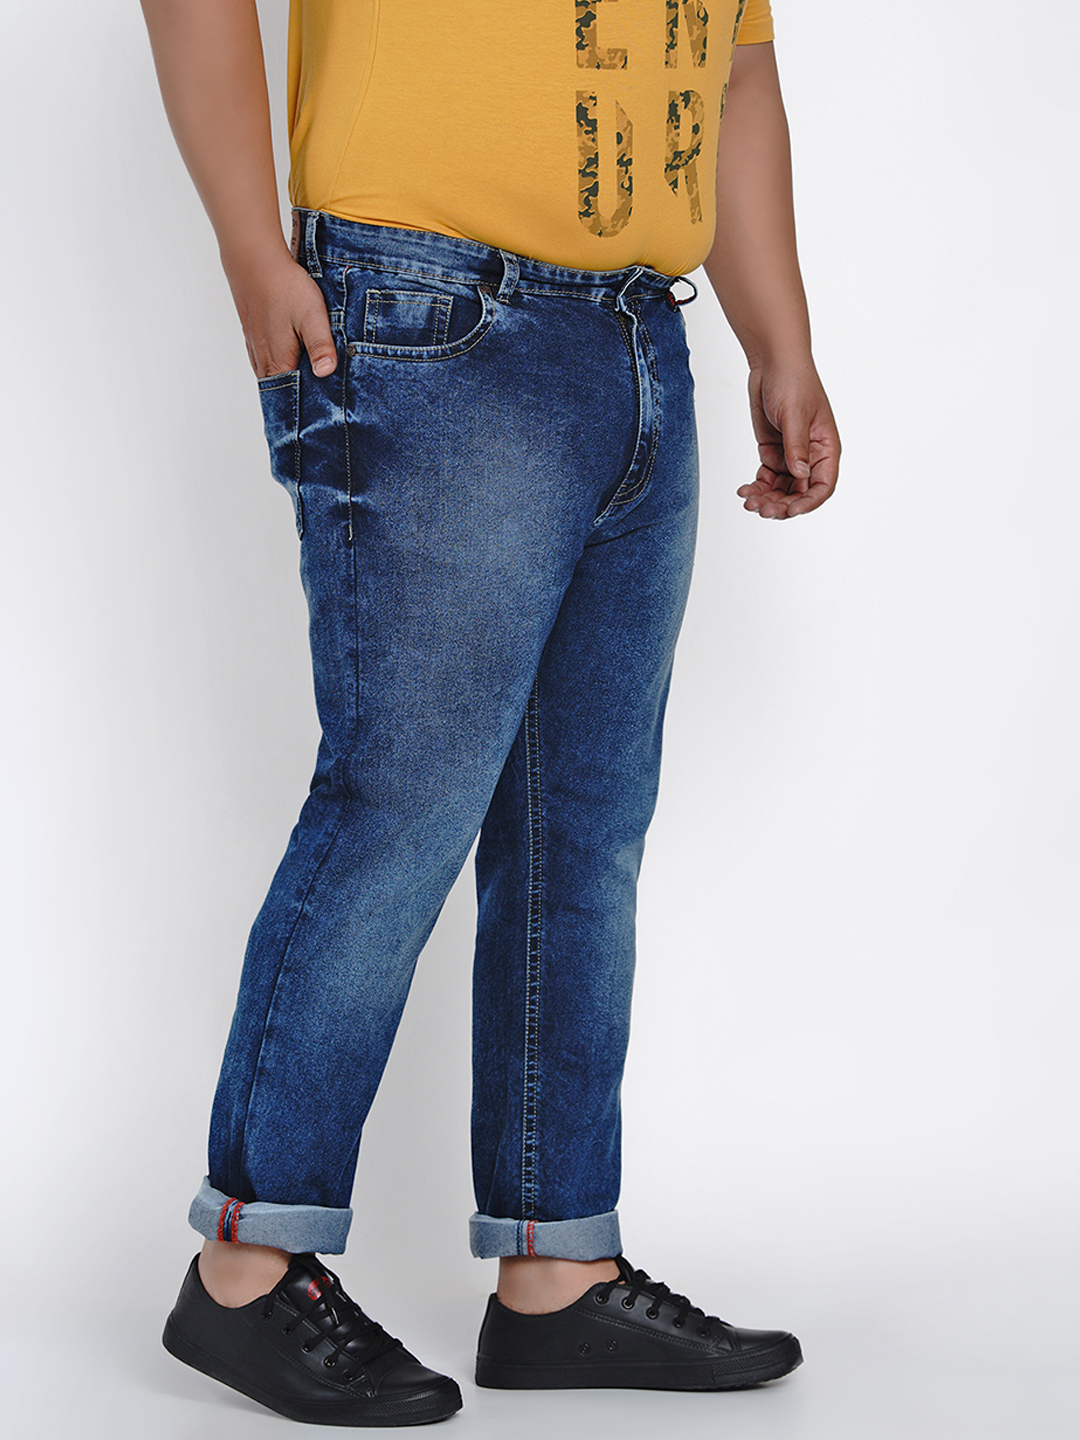 affordables/jeans/JPJ2013/jpj2013-4.jpg